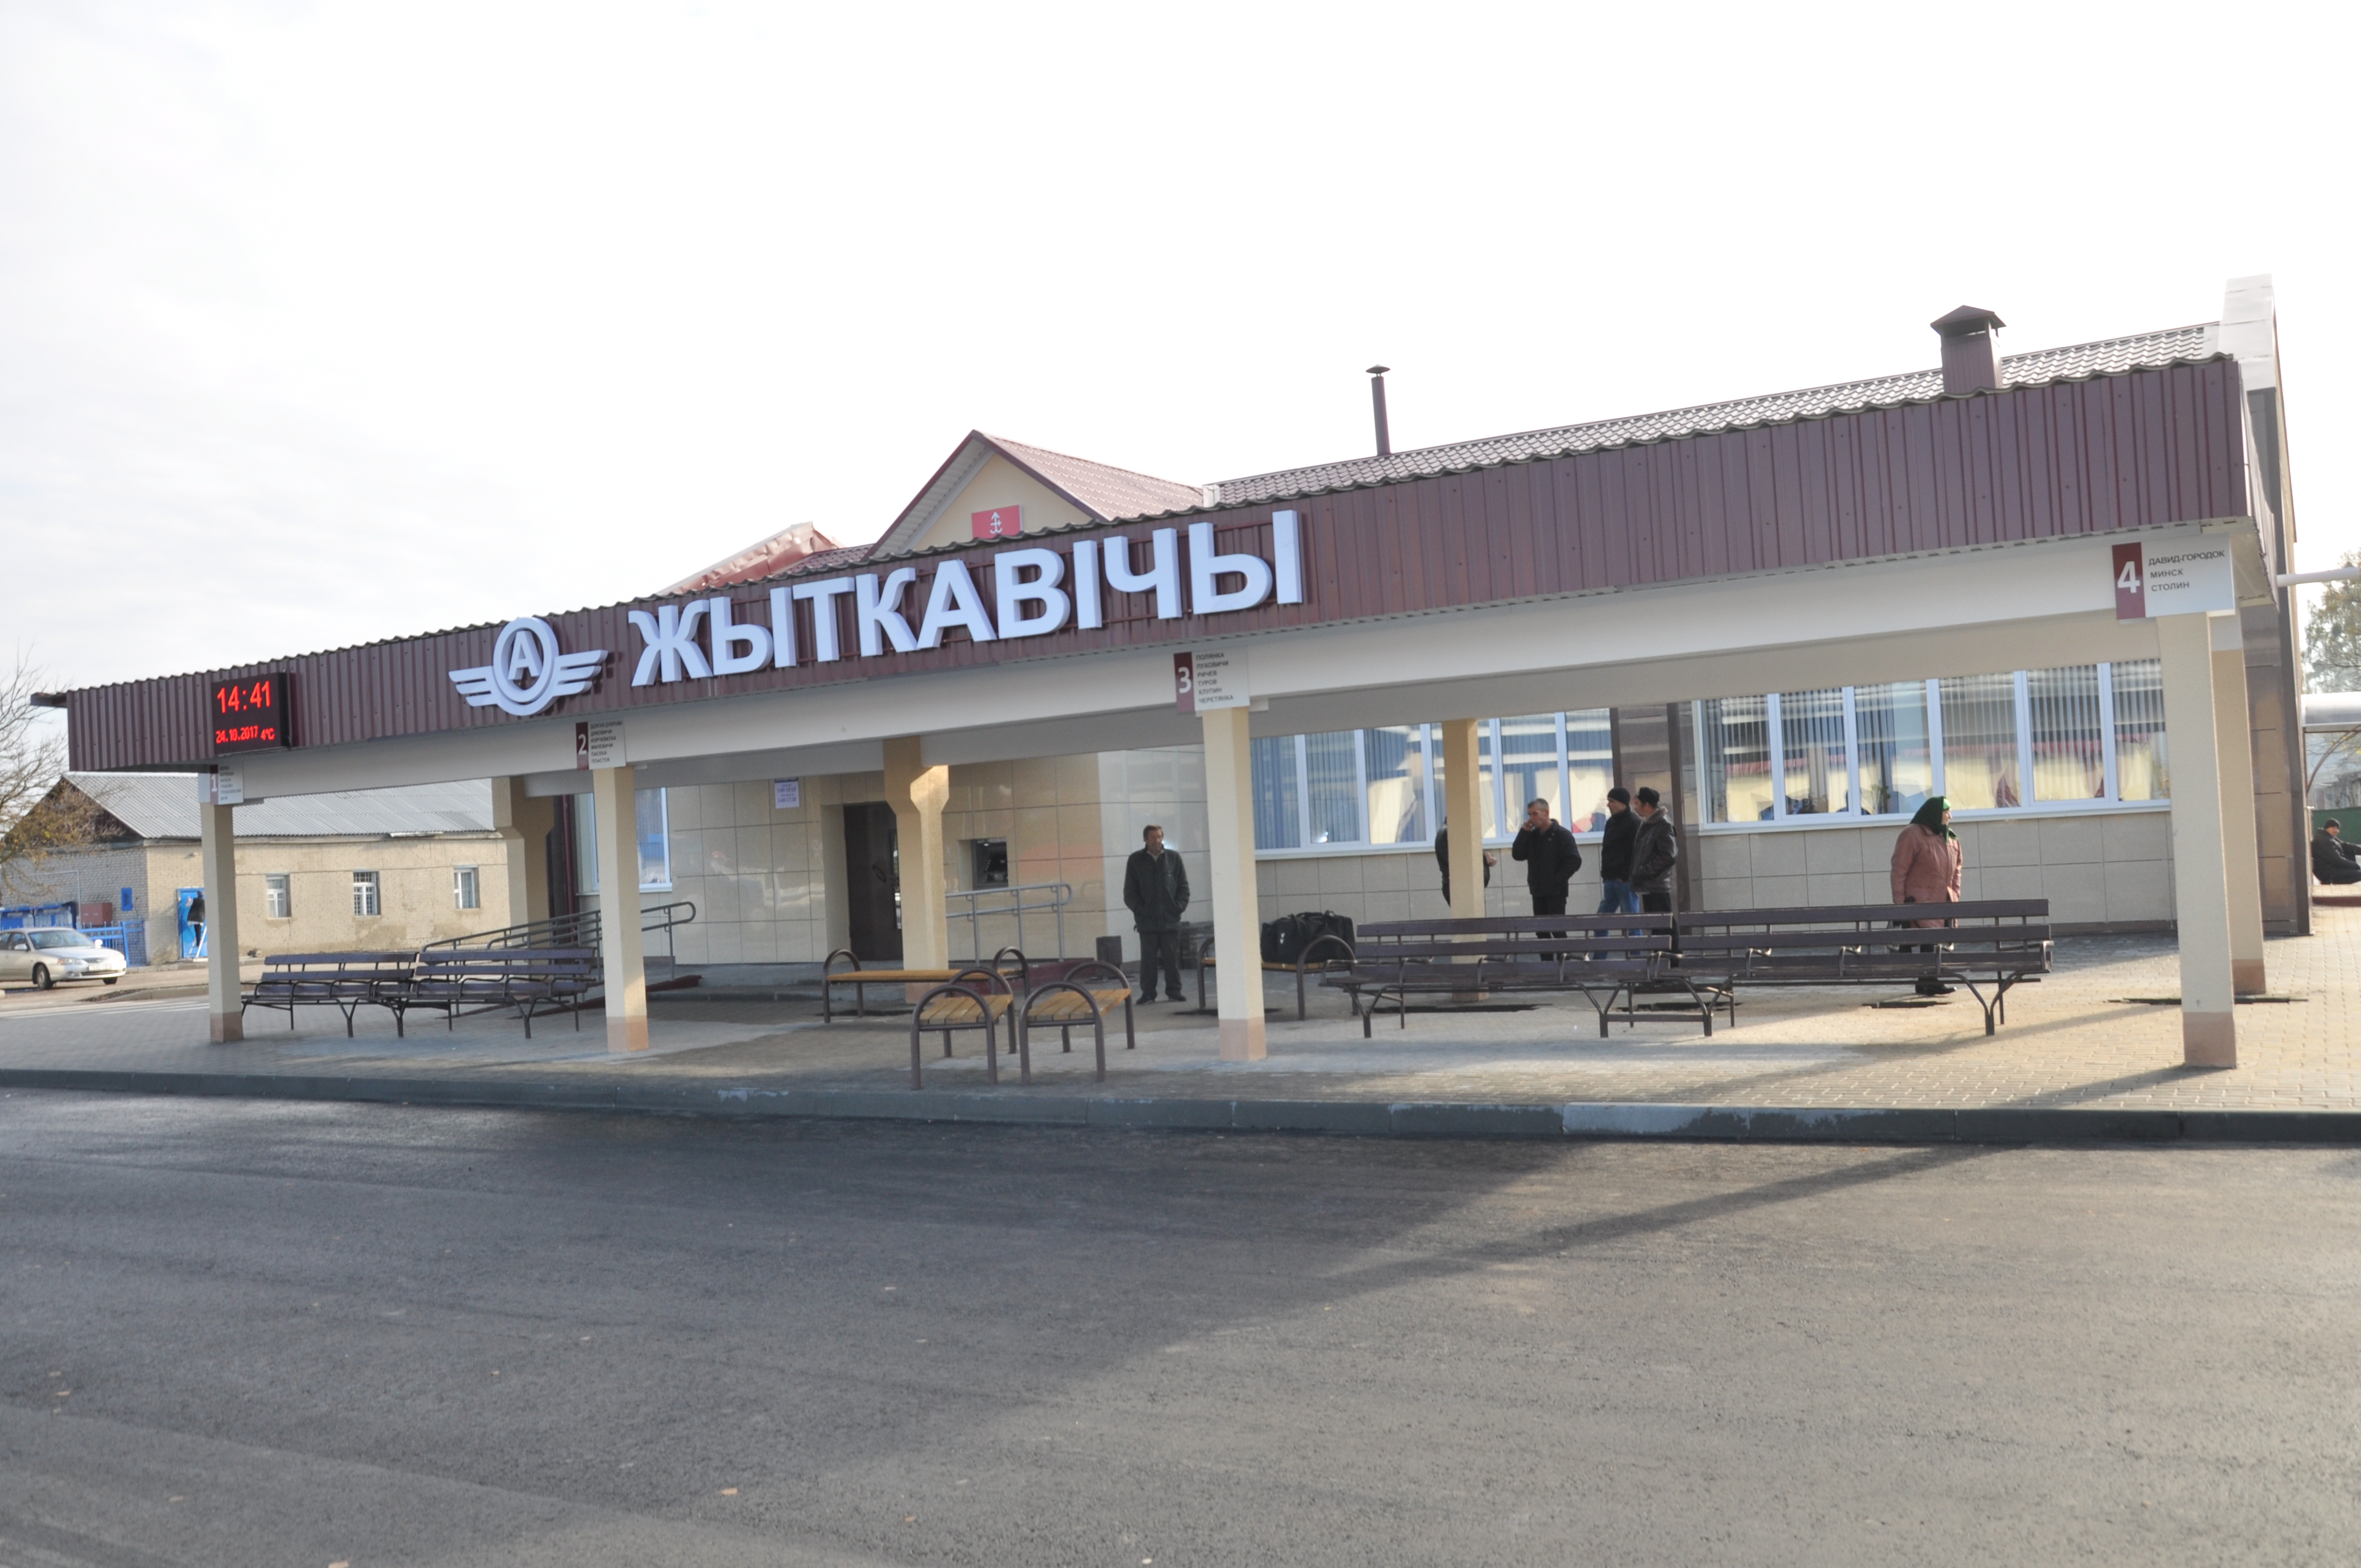 Обновленный автовокзал в Житковичах распахнул двери для пассажиров